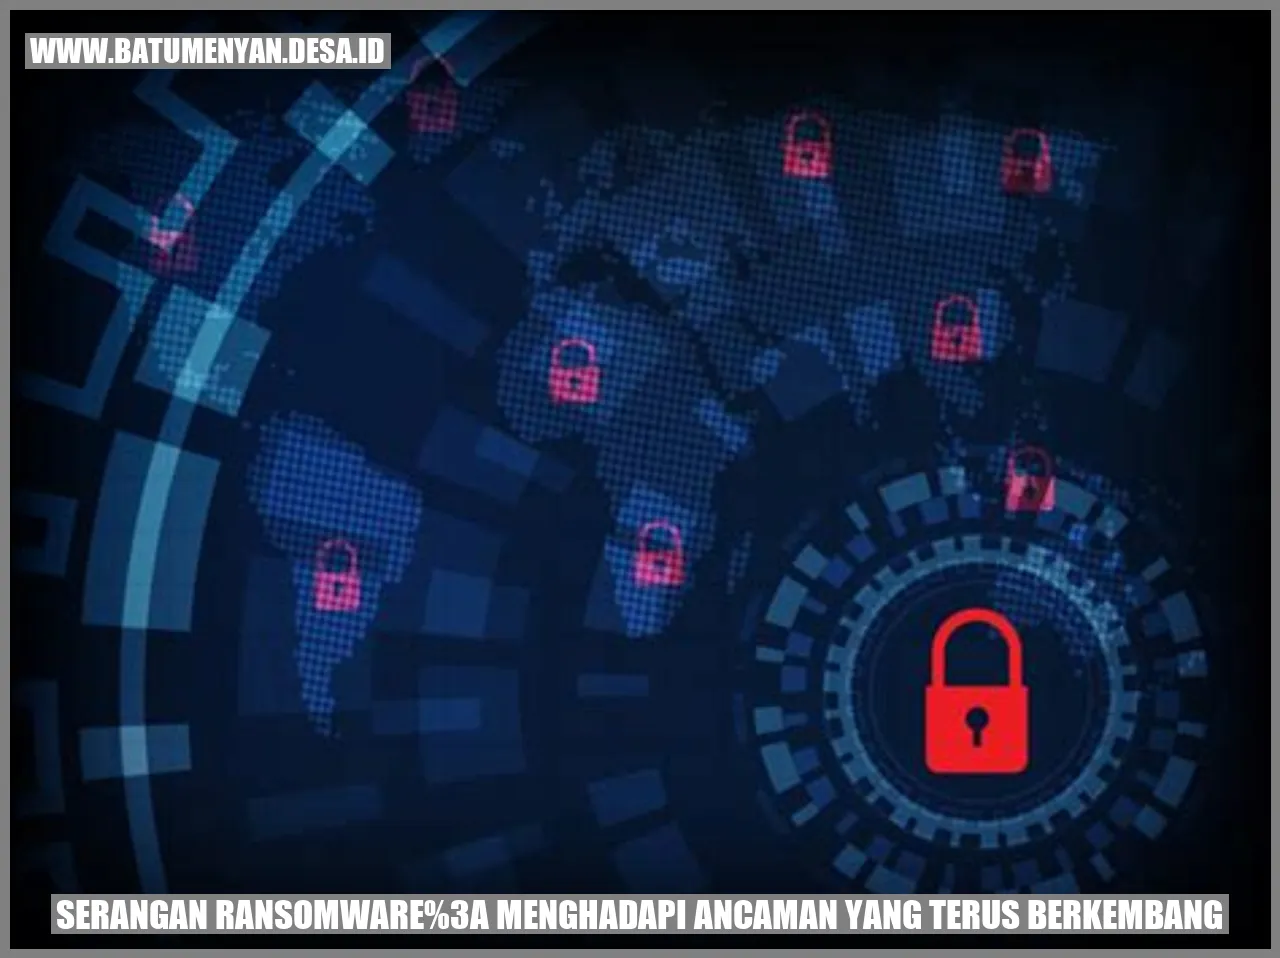 Serangan Ransomware: Menghadapi Ancaman yang Terus Berkembang